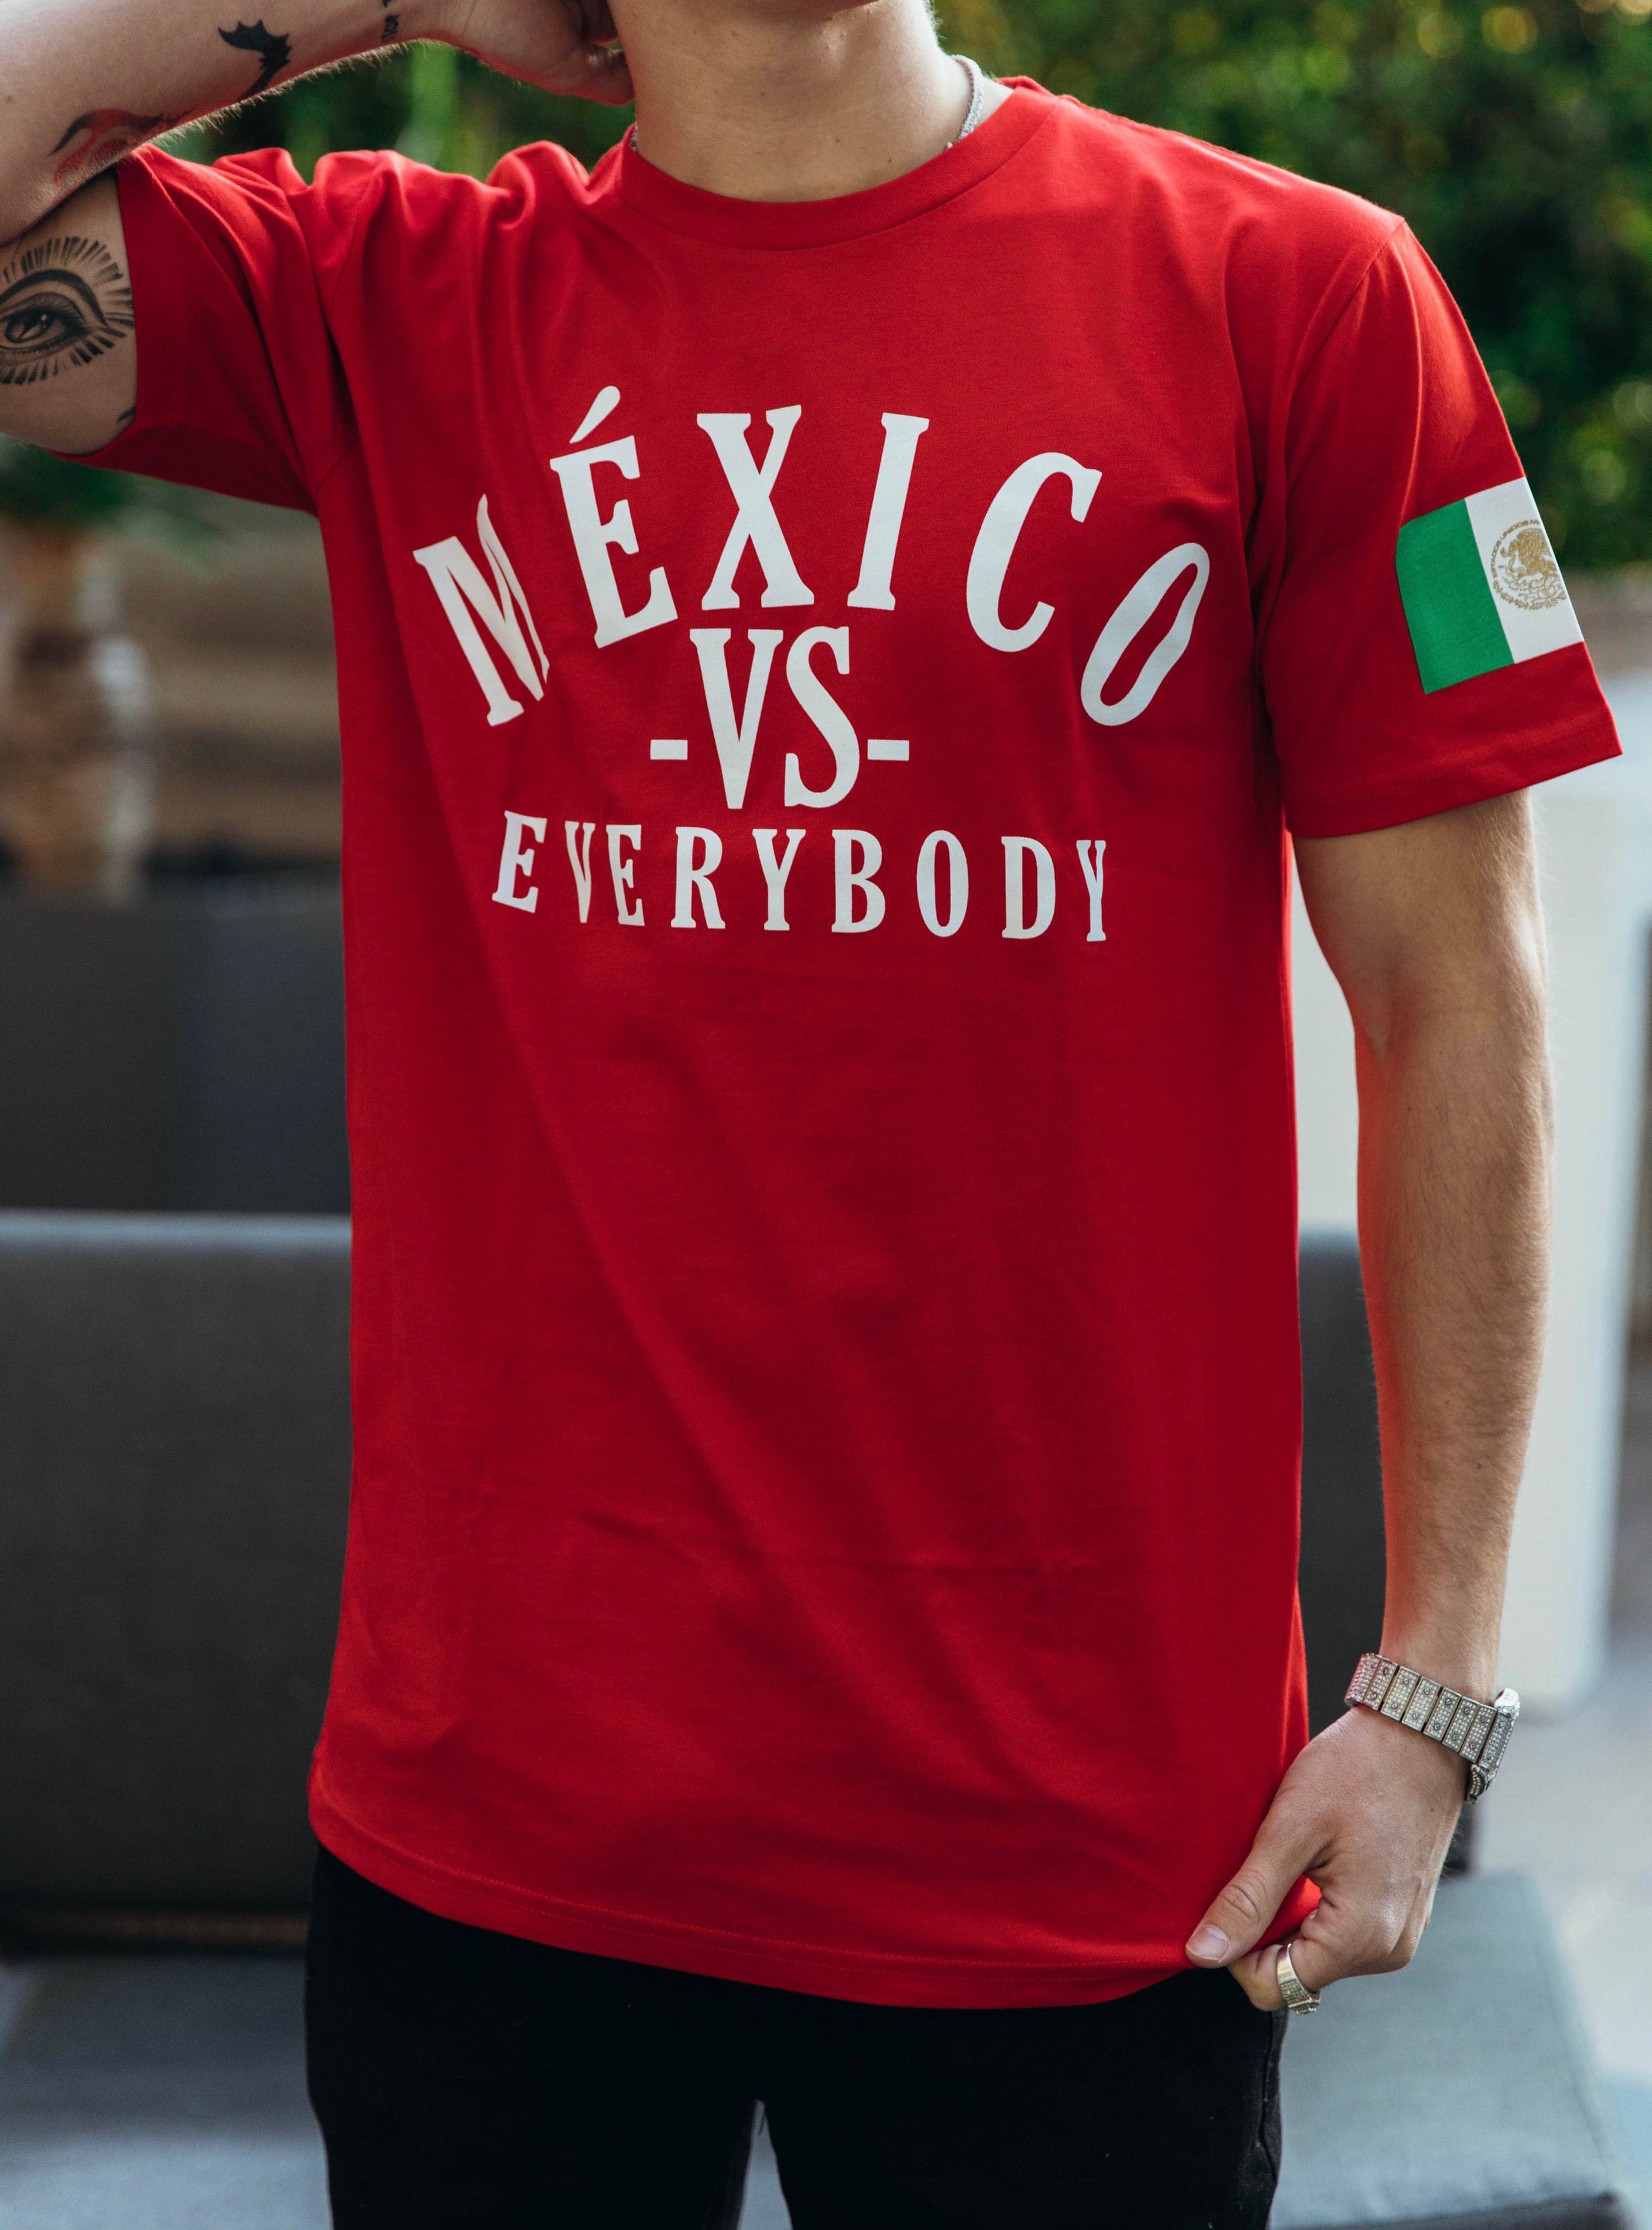 MÉXICO VS EVERYBODY RED T-SHIRT